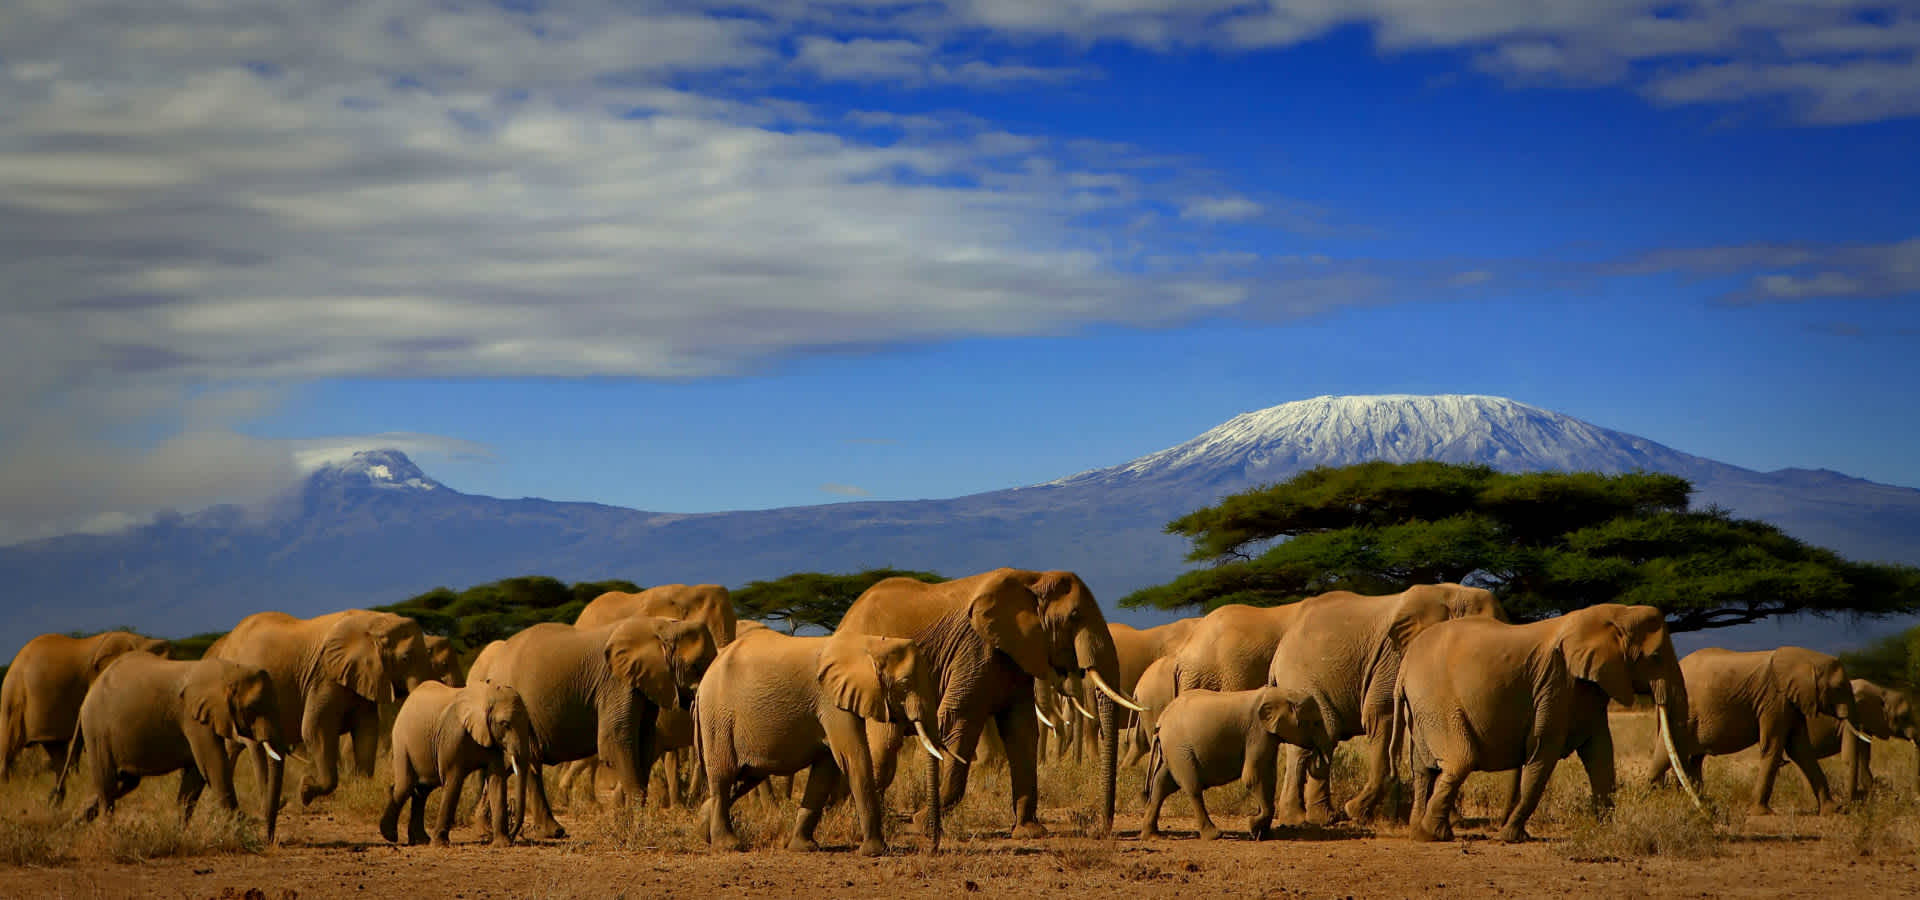 safari guide course kenya